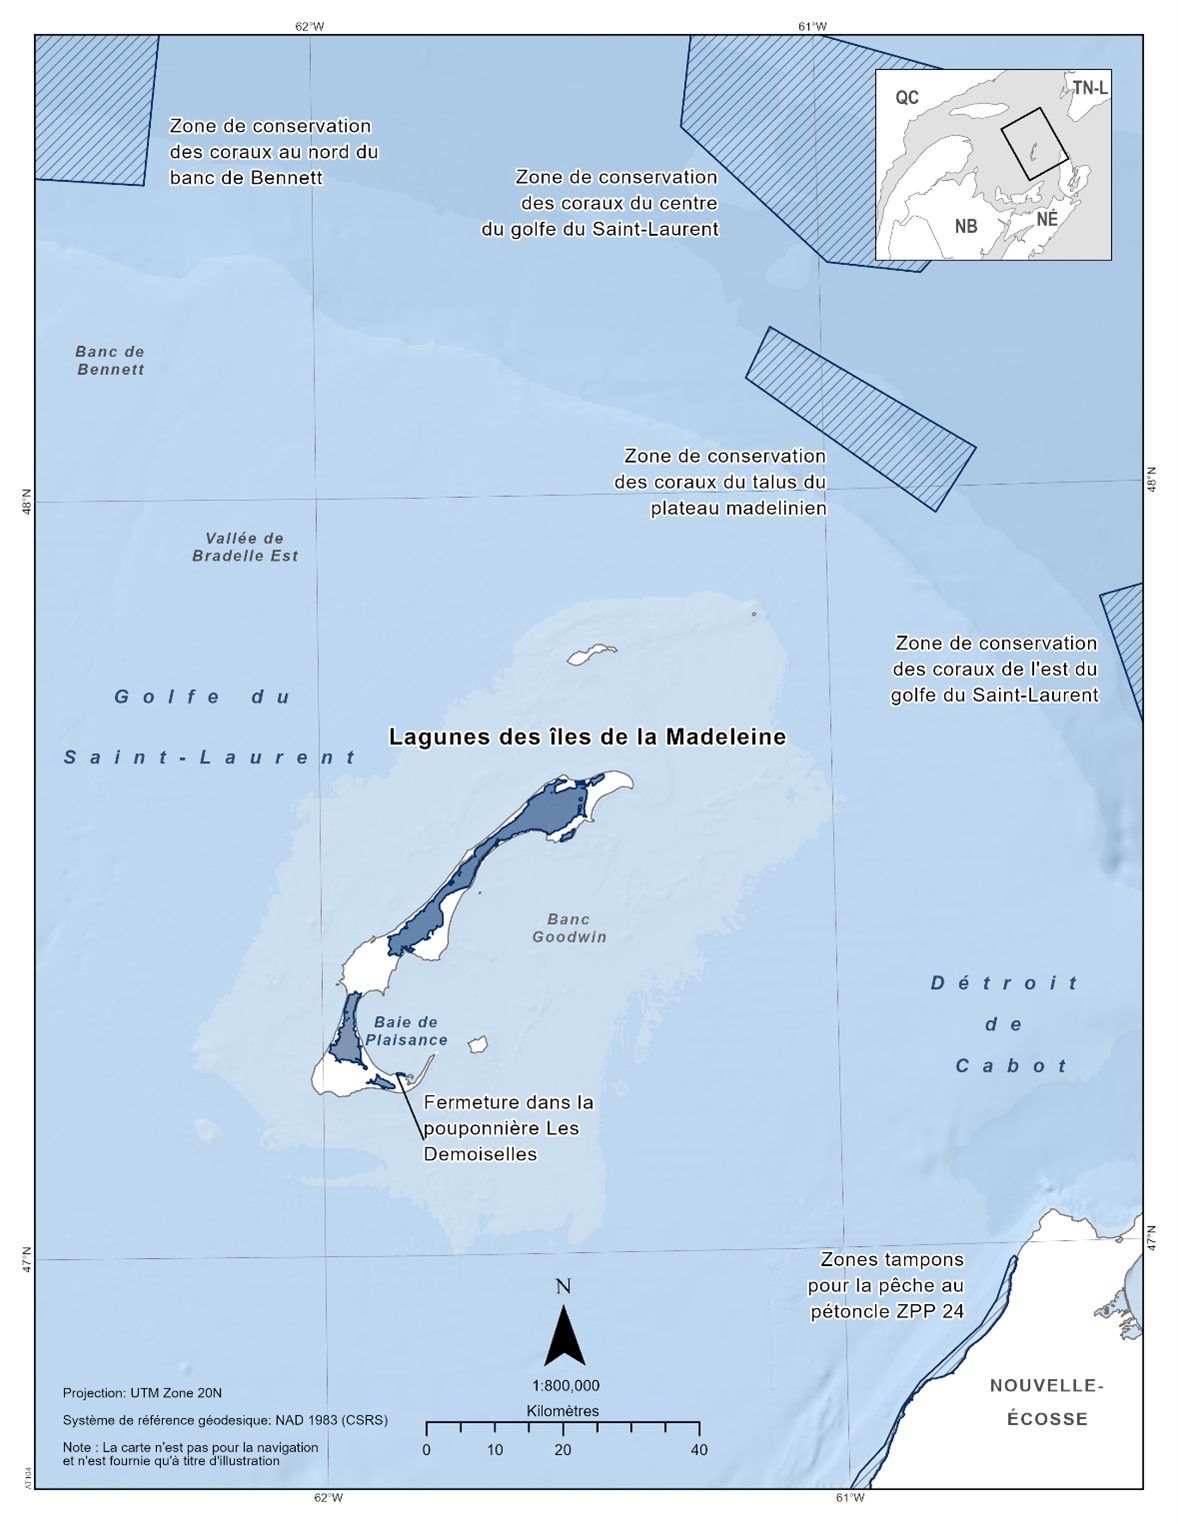 Carte des lagunes des Îles-de-la-Madeleine en bleu foncé. La carte présente également les refuges marins situés à proximité par des lignes diagonales bleu foncé (zone de conservation des coraux du nord du banc Bennett, zone de conservation des coraux du centre du golfe du Saint-Laurent, zone de conservation des coraux de la pente des hauts-fonds de la Madeleine, zone de conservation des coraux de l'est du golfe du Saint-Laurent, zone tampon pour le pétoncle ZPP 24, pouponnière Les Demoiselles).